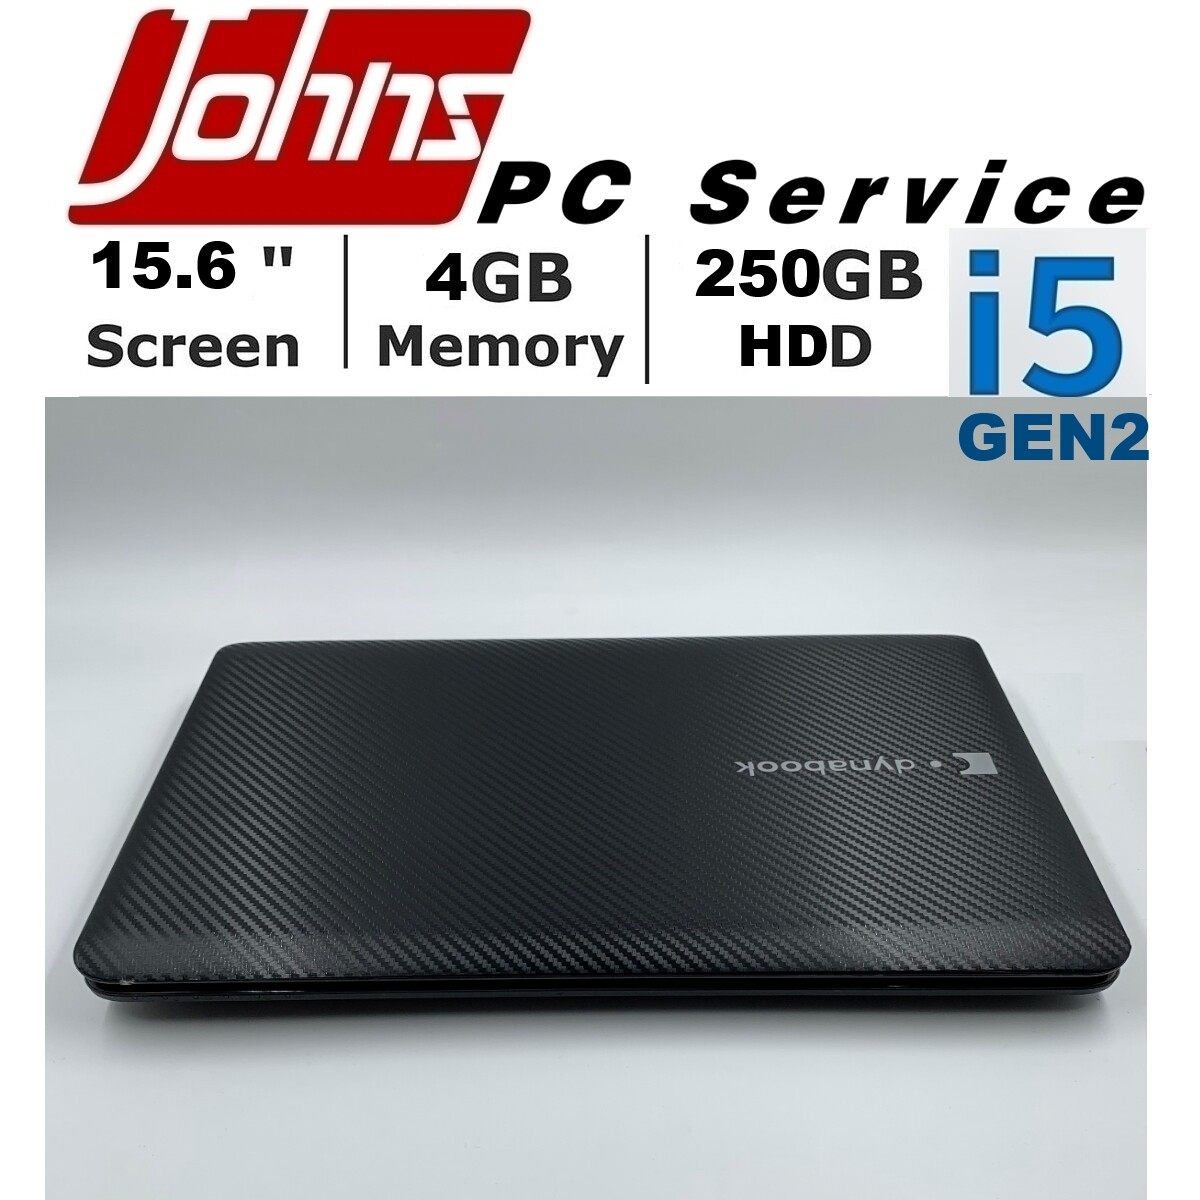 โน๊ตบุ๊คมือสอง Notebook ราคาถูกๆ Toshiba L750 Core i5 gen2 15.6นิ้ว โน๊ตบุ๊ค laptop มือสอง โน็ตบุ๊คมือ2 โน้ตบุ๊คถูกๆ โน๊ตบุ๊คมือสอง2 โน๊ตบุ๊คมือสอง i3/i5/i7